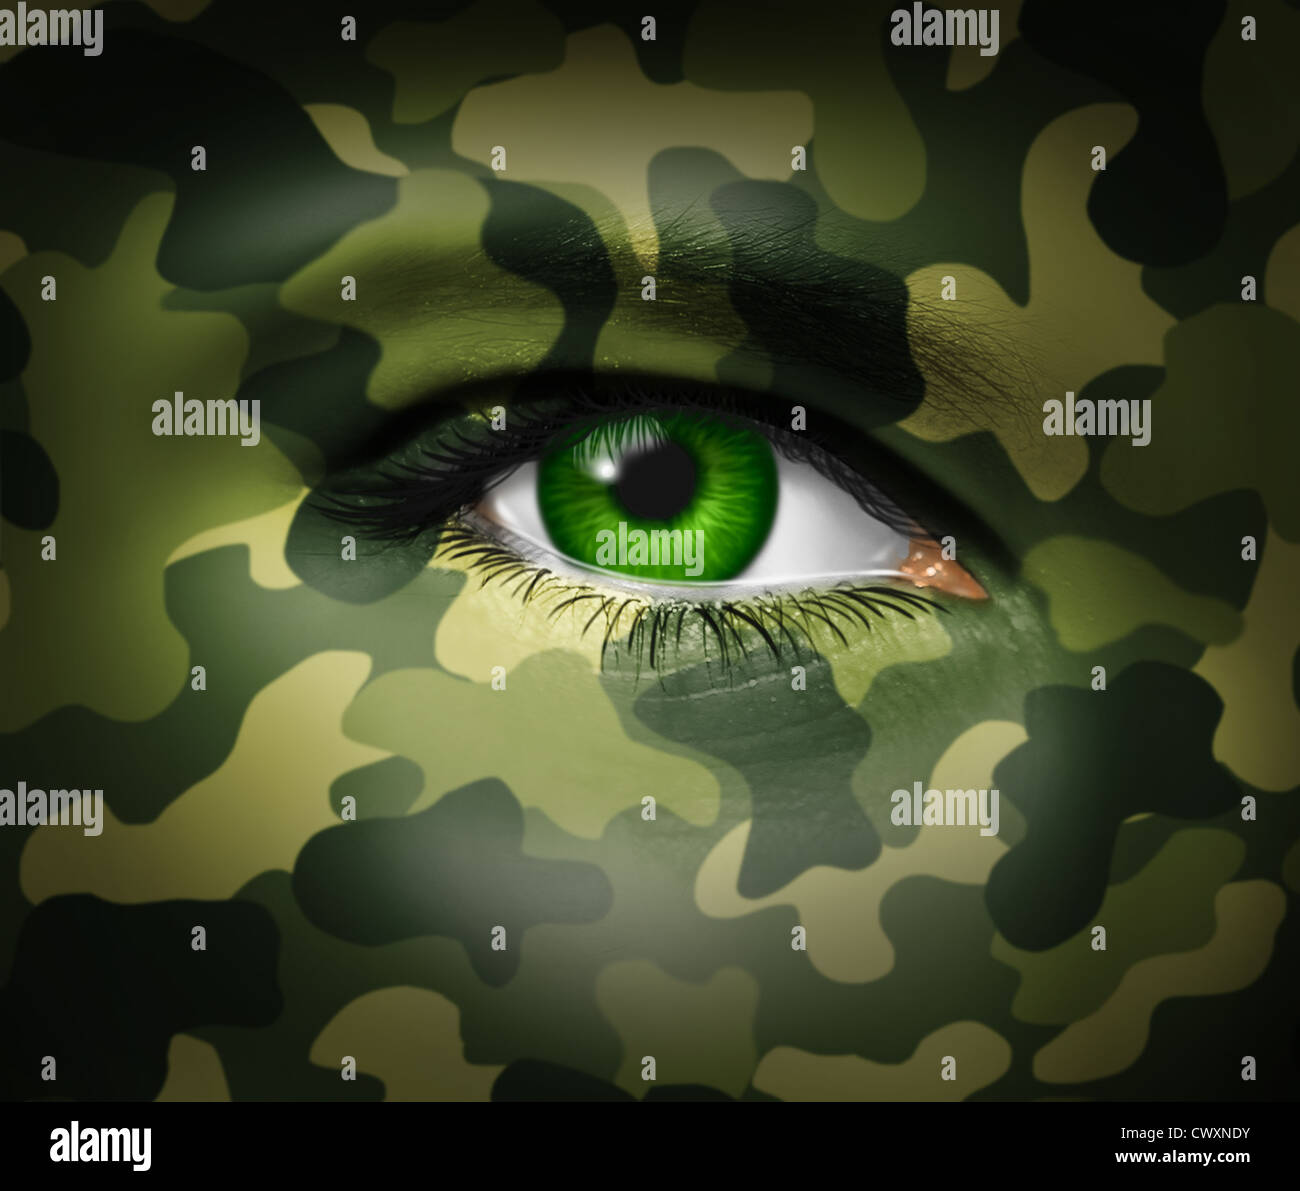 Di mimetizzazione militare su un volto umano con una chiusura dell'occhio verde guardando e cercando in rappresentanza di guerra tattica e strategia di combattimento in un esercito o situazione aziendale. Foto Stock